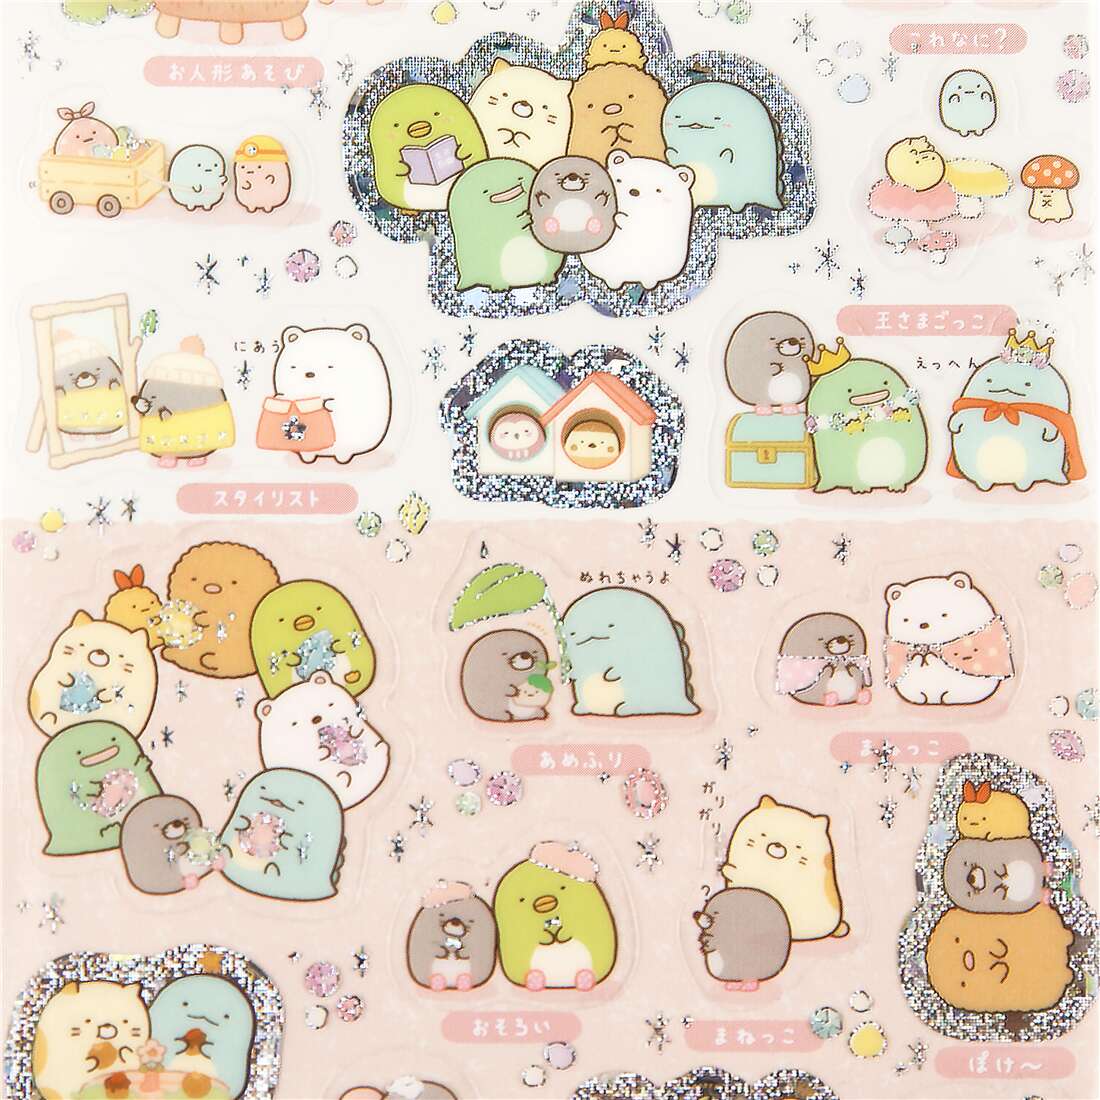 NEW 1 Sheet Of Sumikko Gurashi Kawaii Stickers San-X Cute Anlimals Japanese